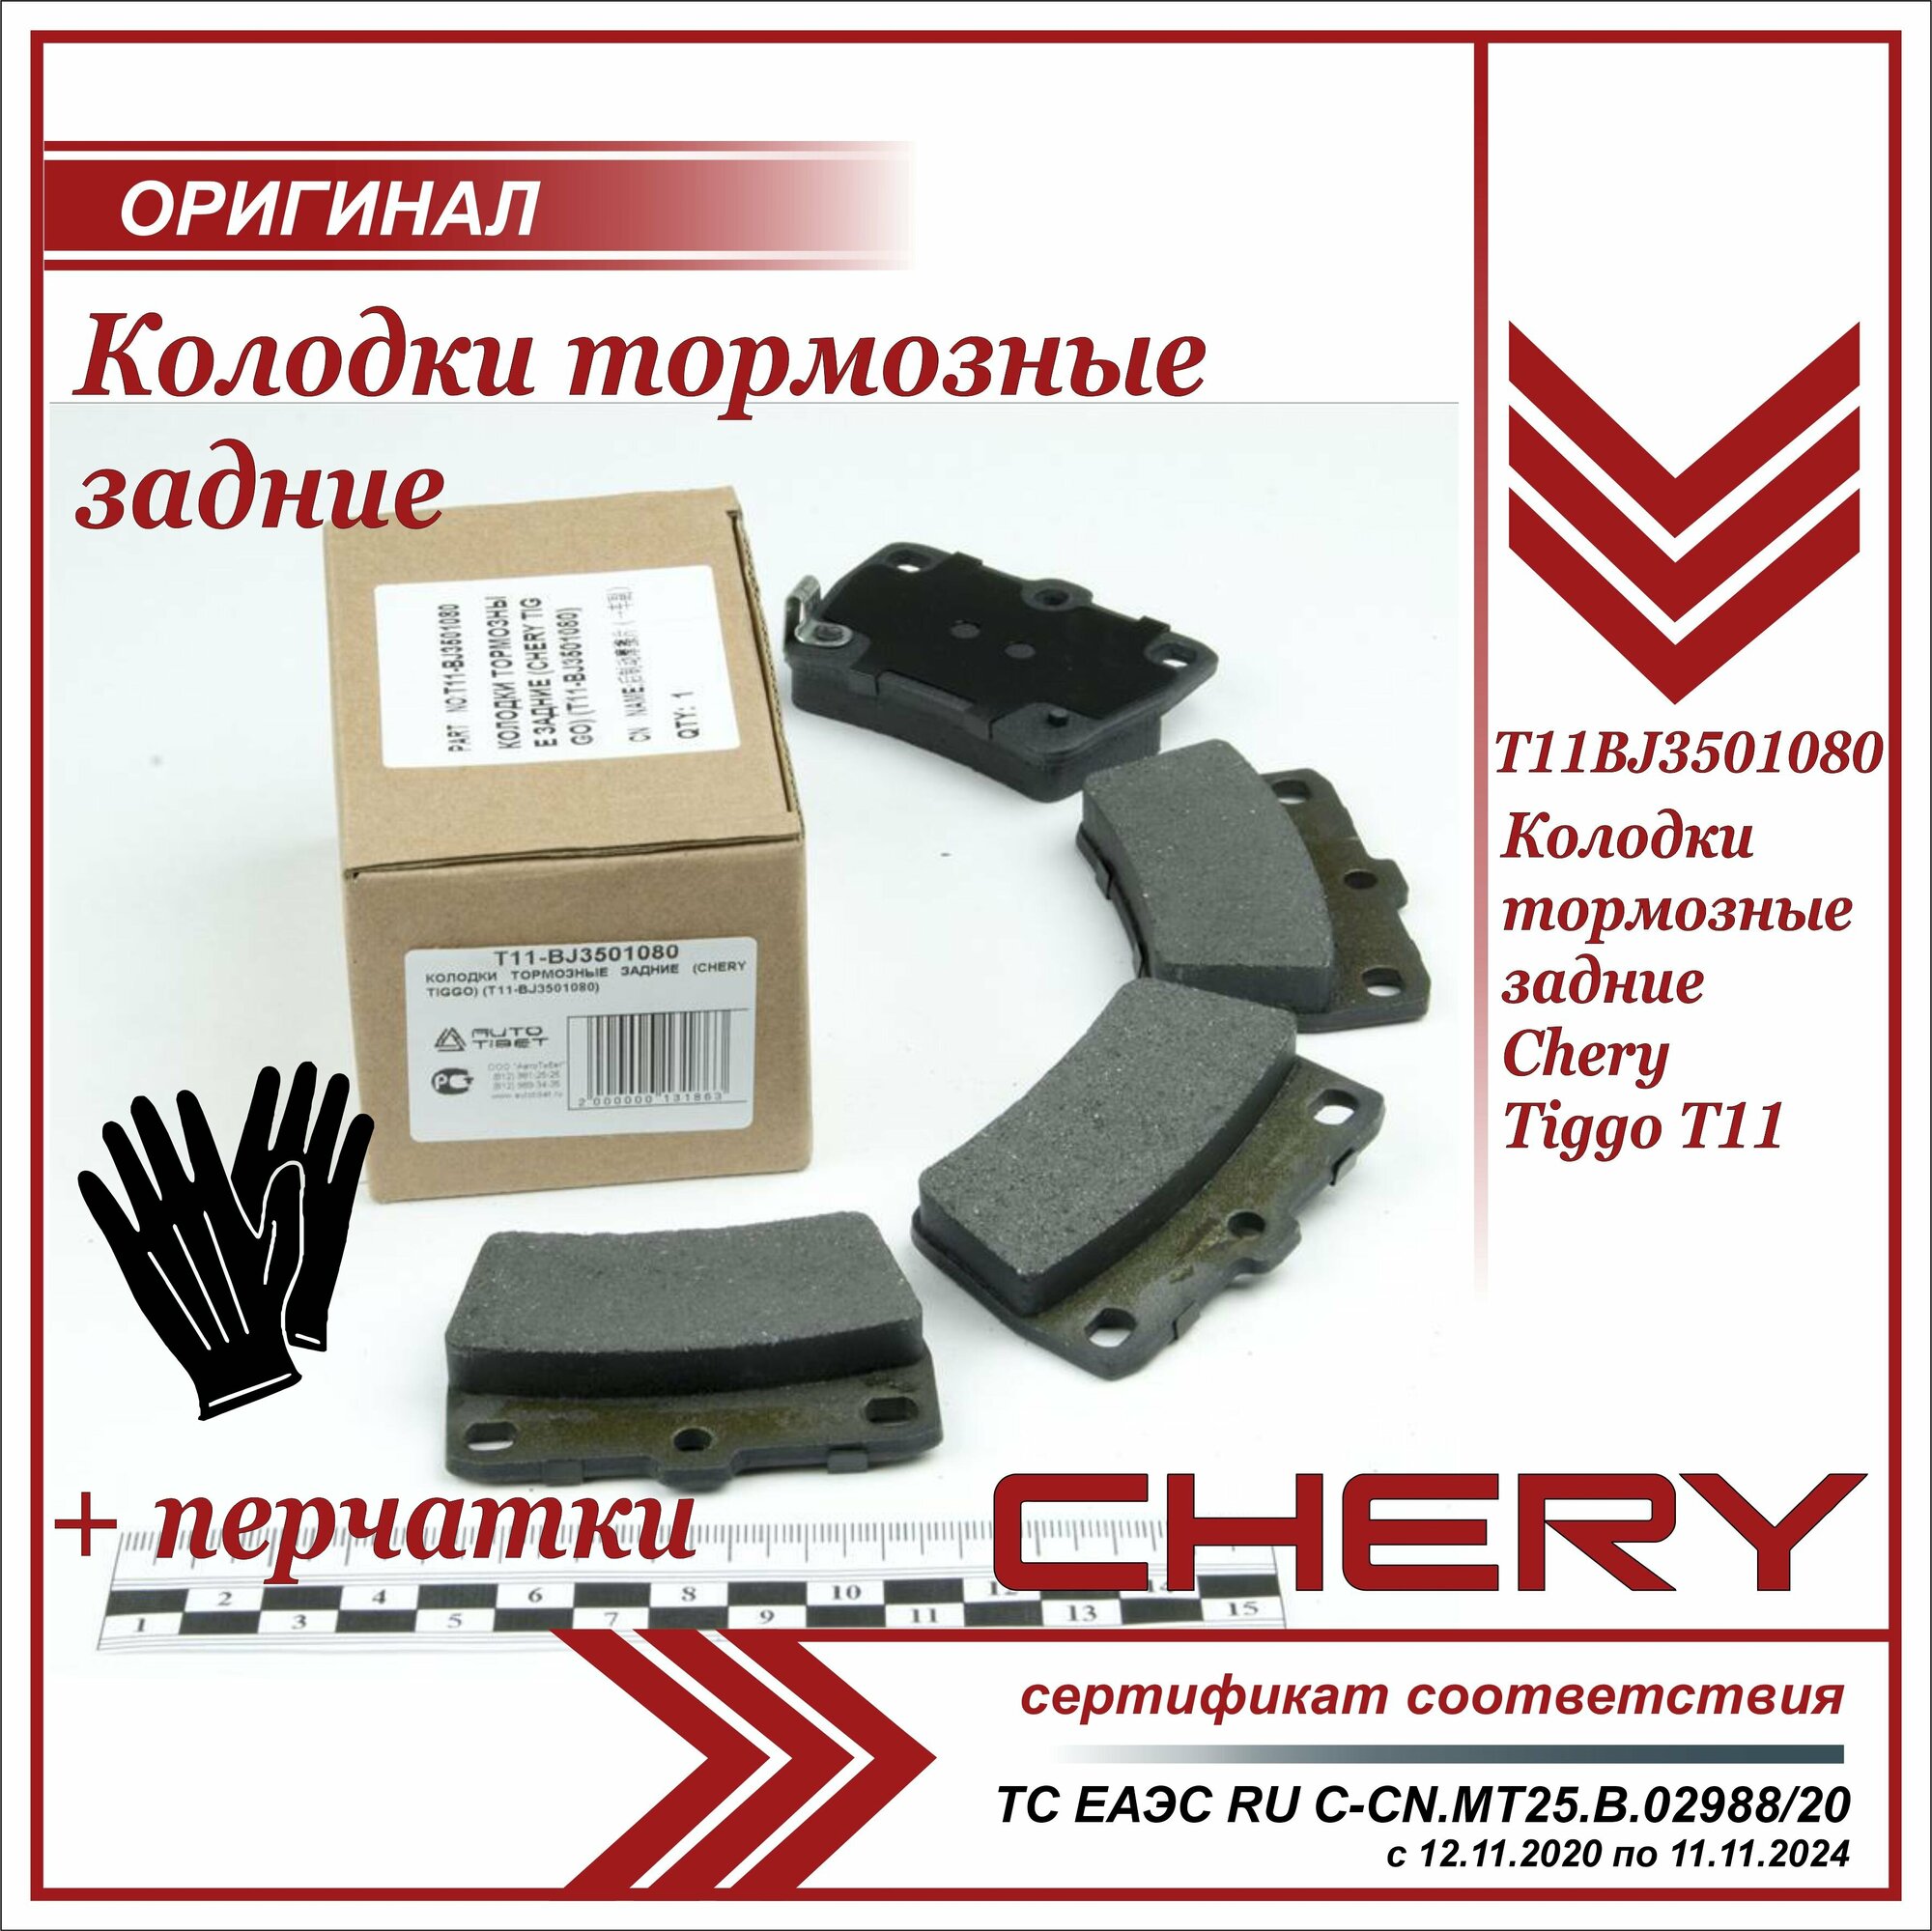 Колодки тормозные задние Чери Тигго Т11 Chery Tiggo T11 комплект 4 штуки T11BJ3501080 + пара перчаток